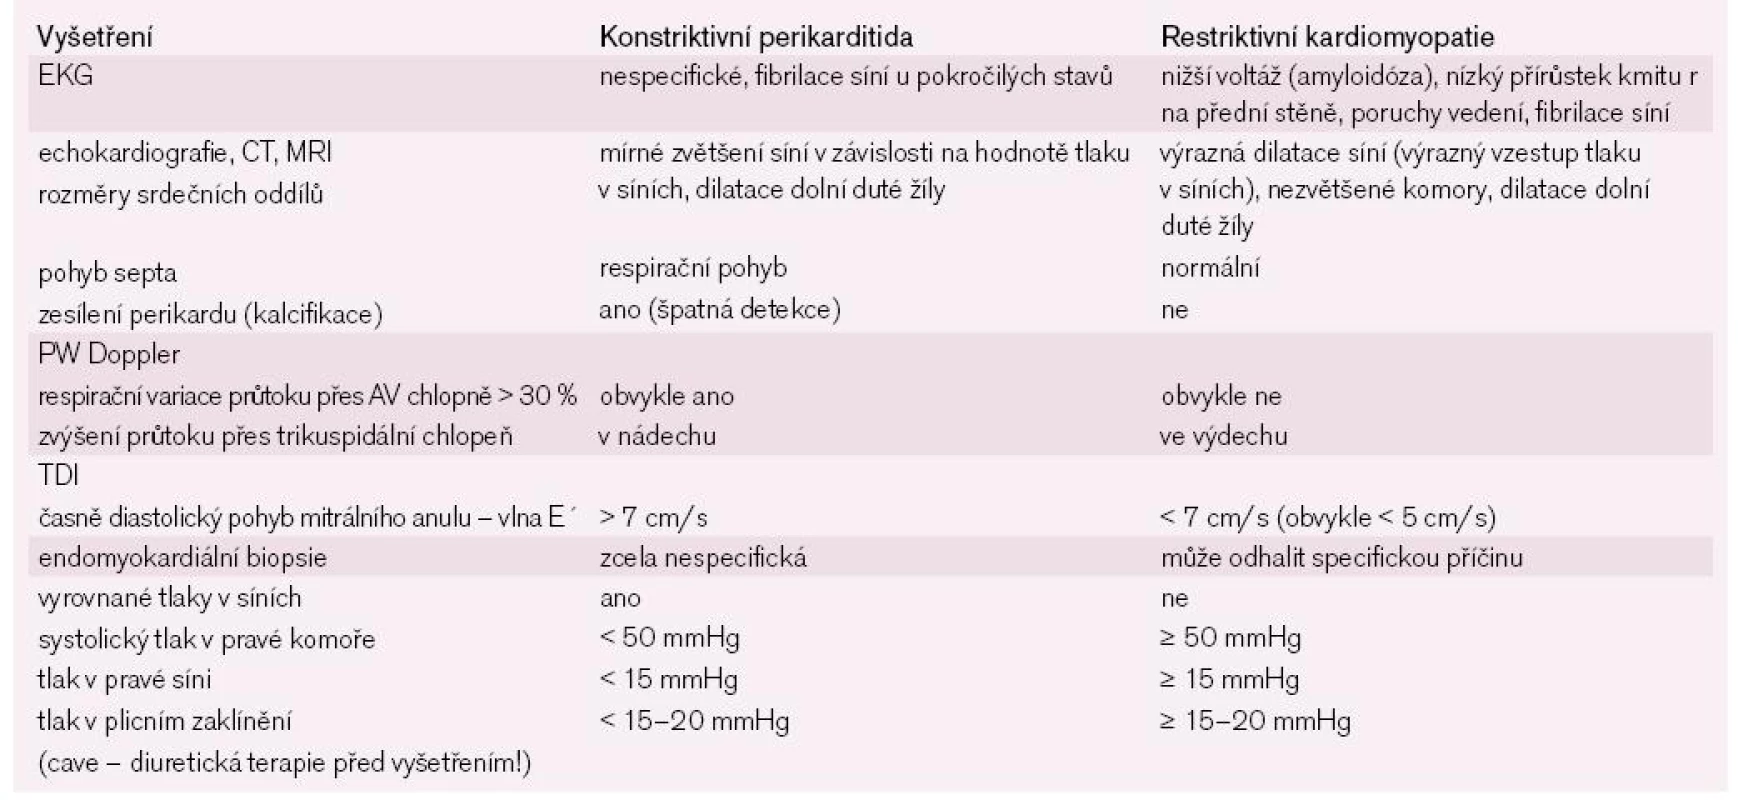 Odlišení konstriktivní perikarditidy a restriktivní kardiomyopatie.